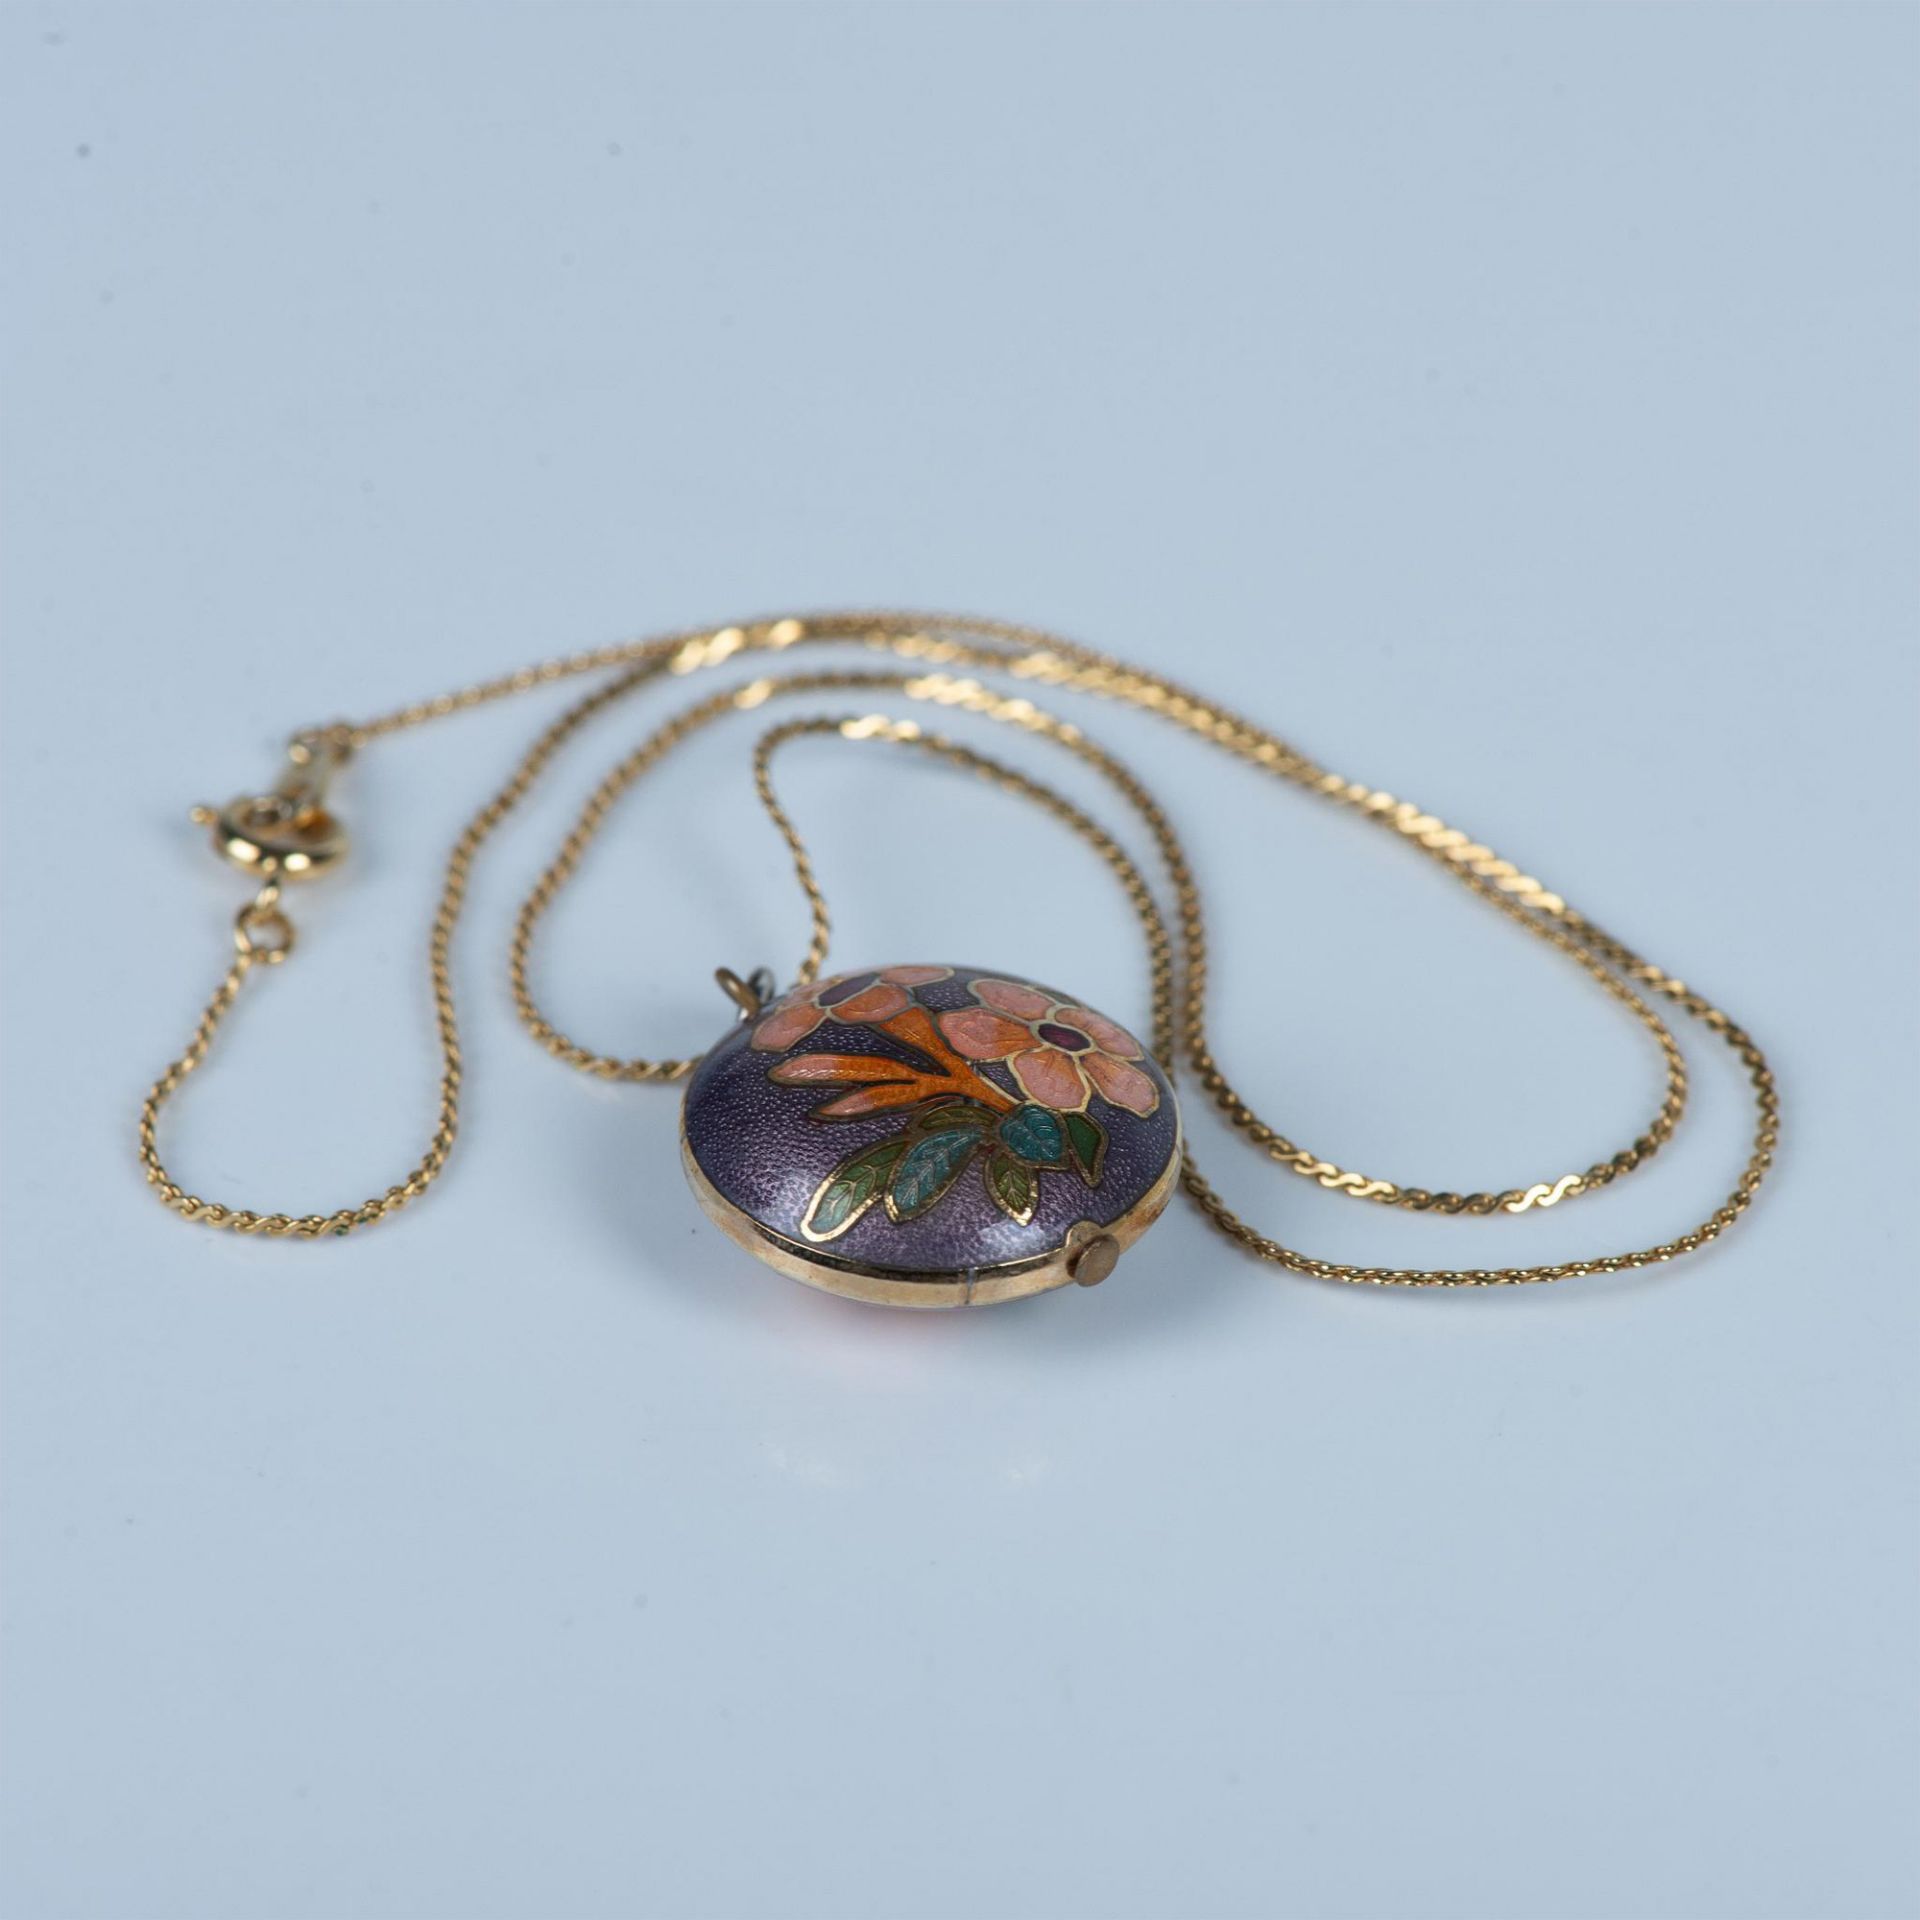 Vintage Delicate Cloisonne Flower Necklace - Image 3 of 4